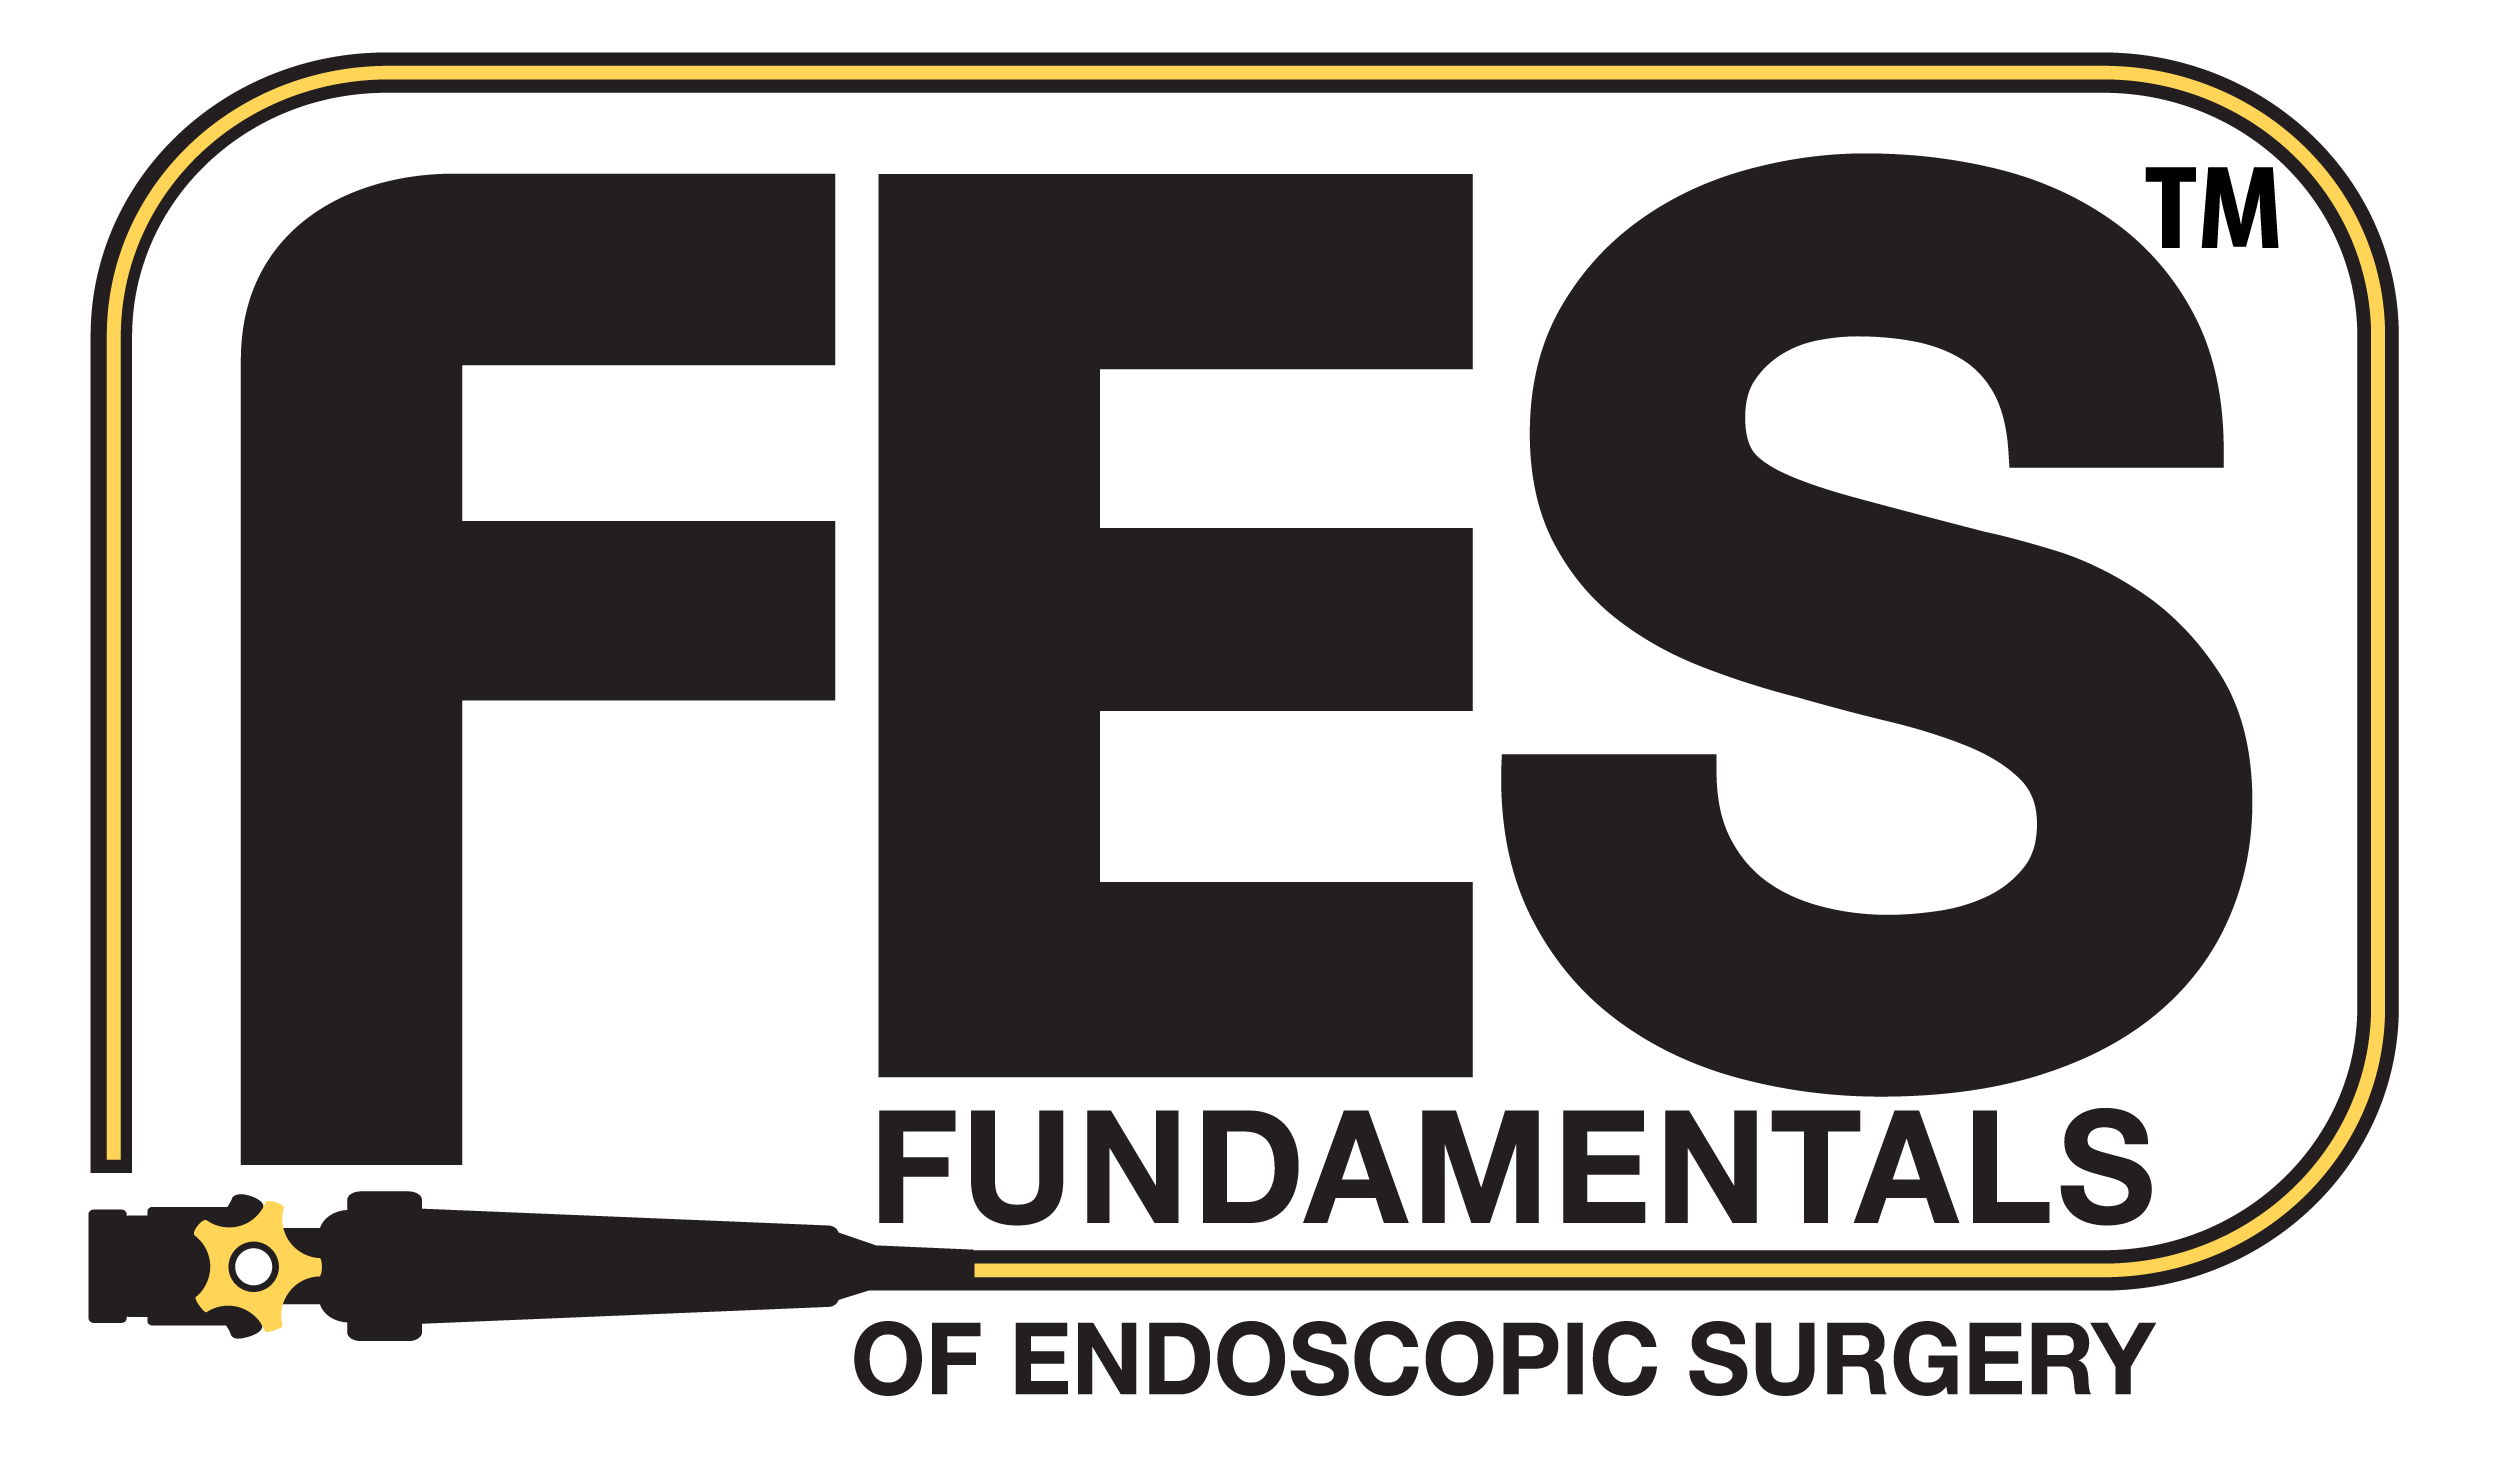 Principes fondamentaux de la chirurgie endoscopique